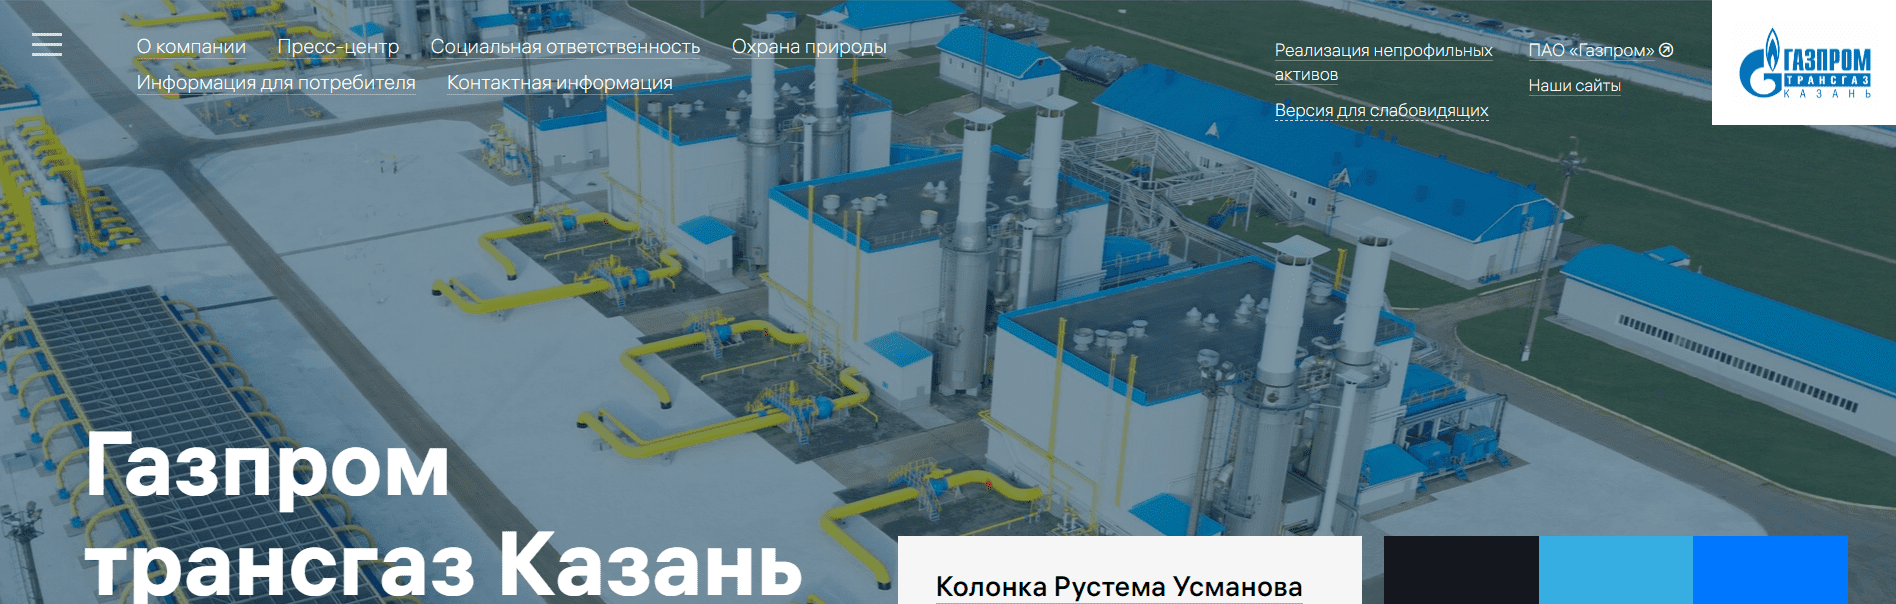 Газпром трансгаз Казань (kazan-tr.gazprom.ru) - официальный сайт